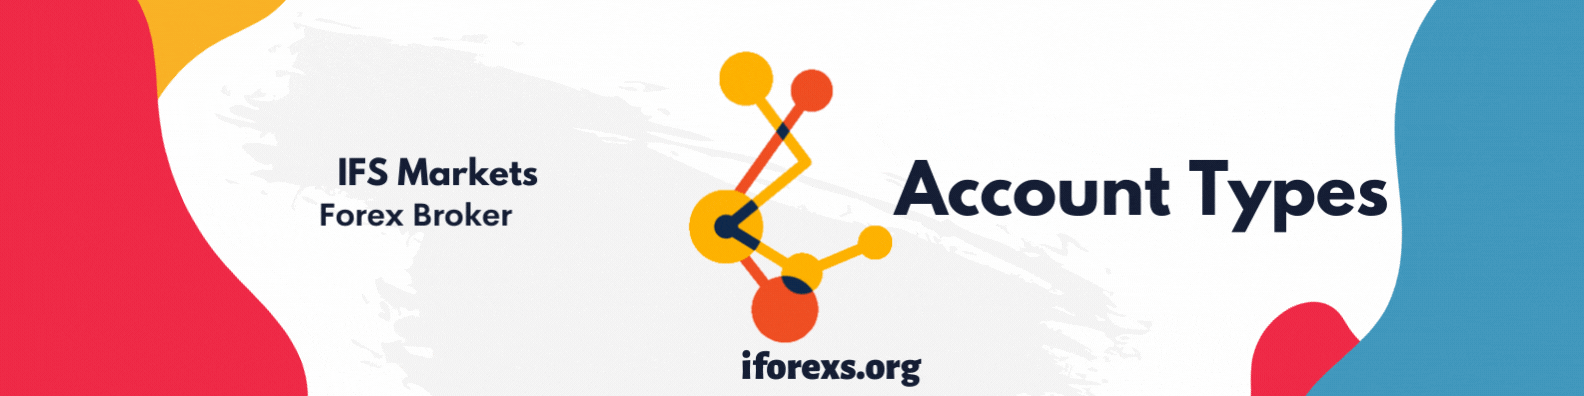 IFS Markets Ltd Venue Account Types (1)